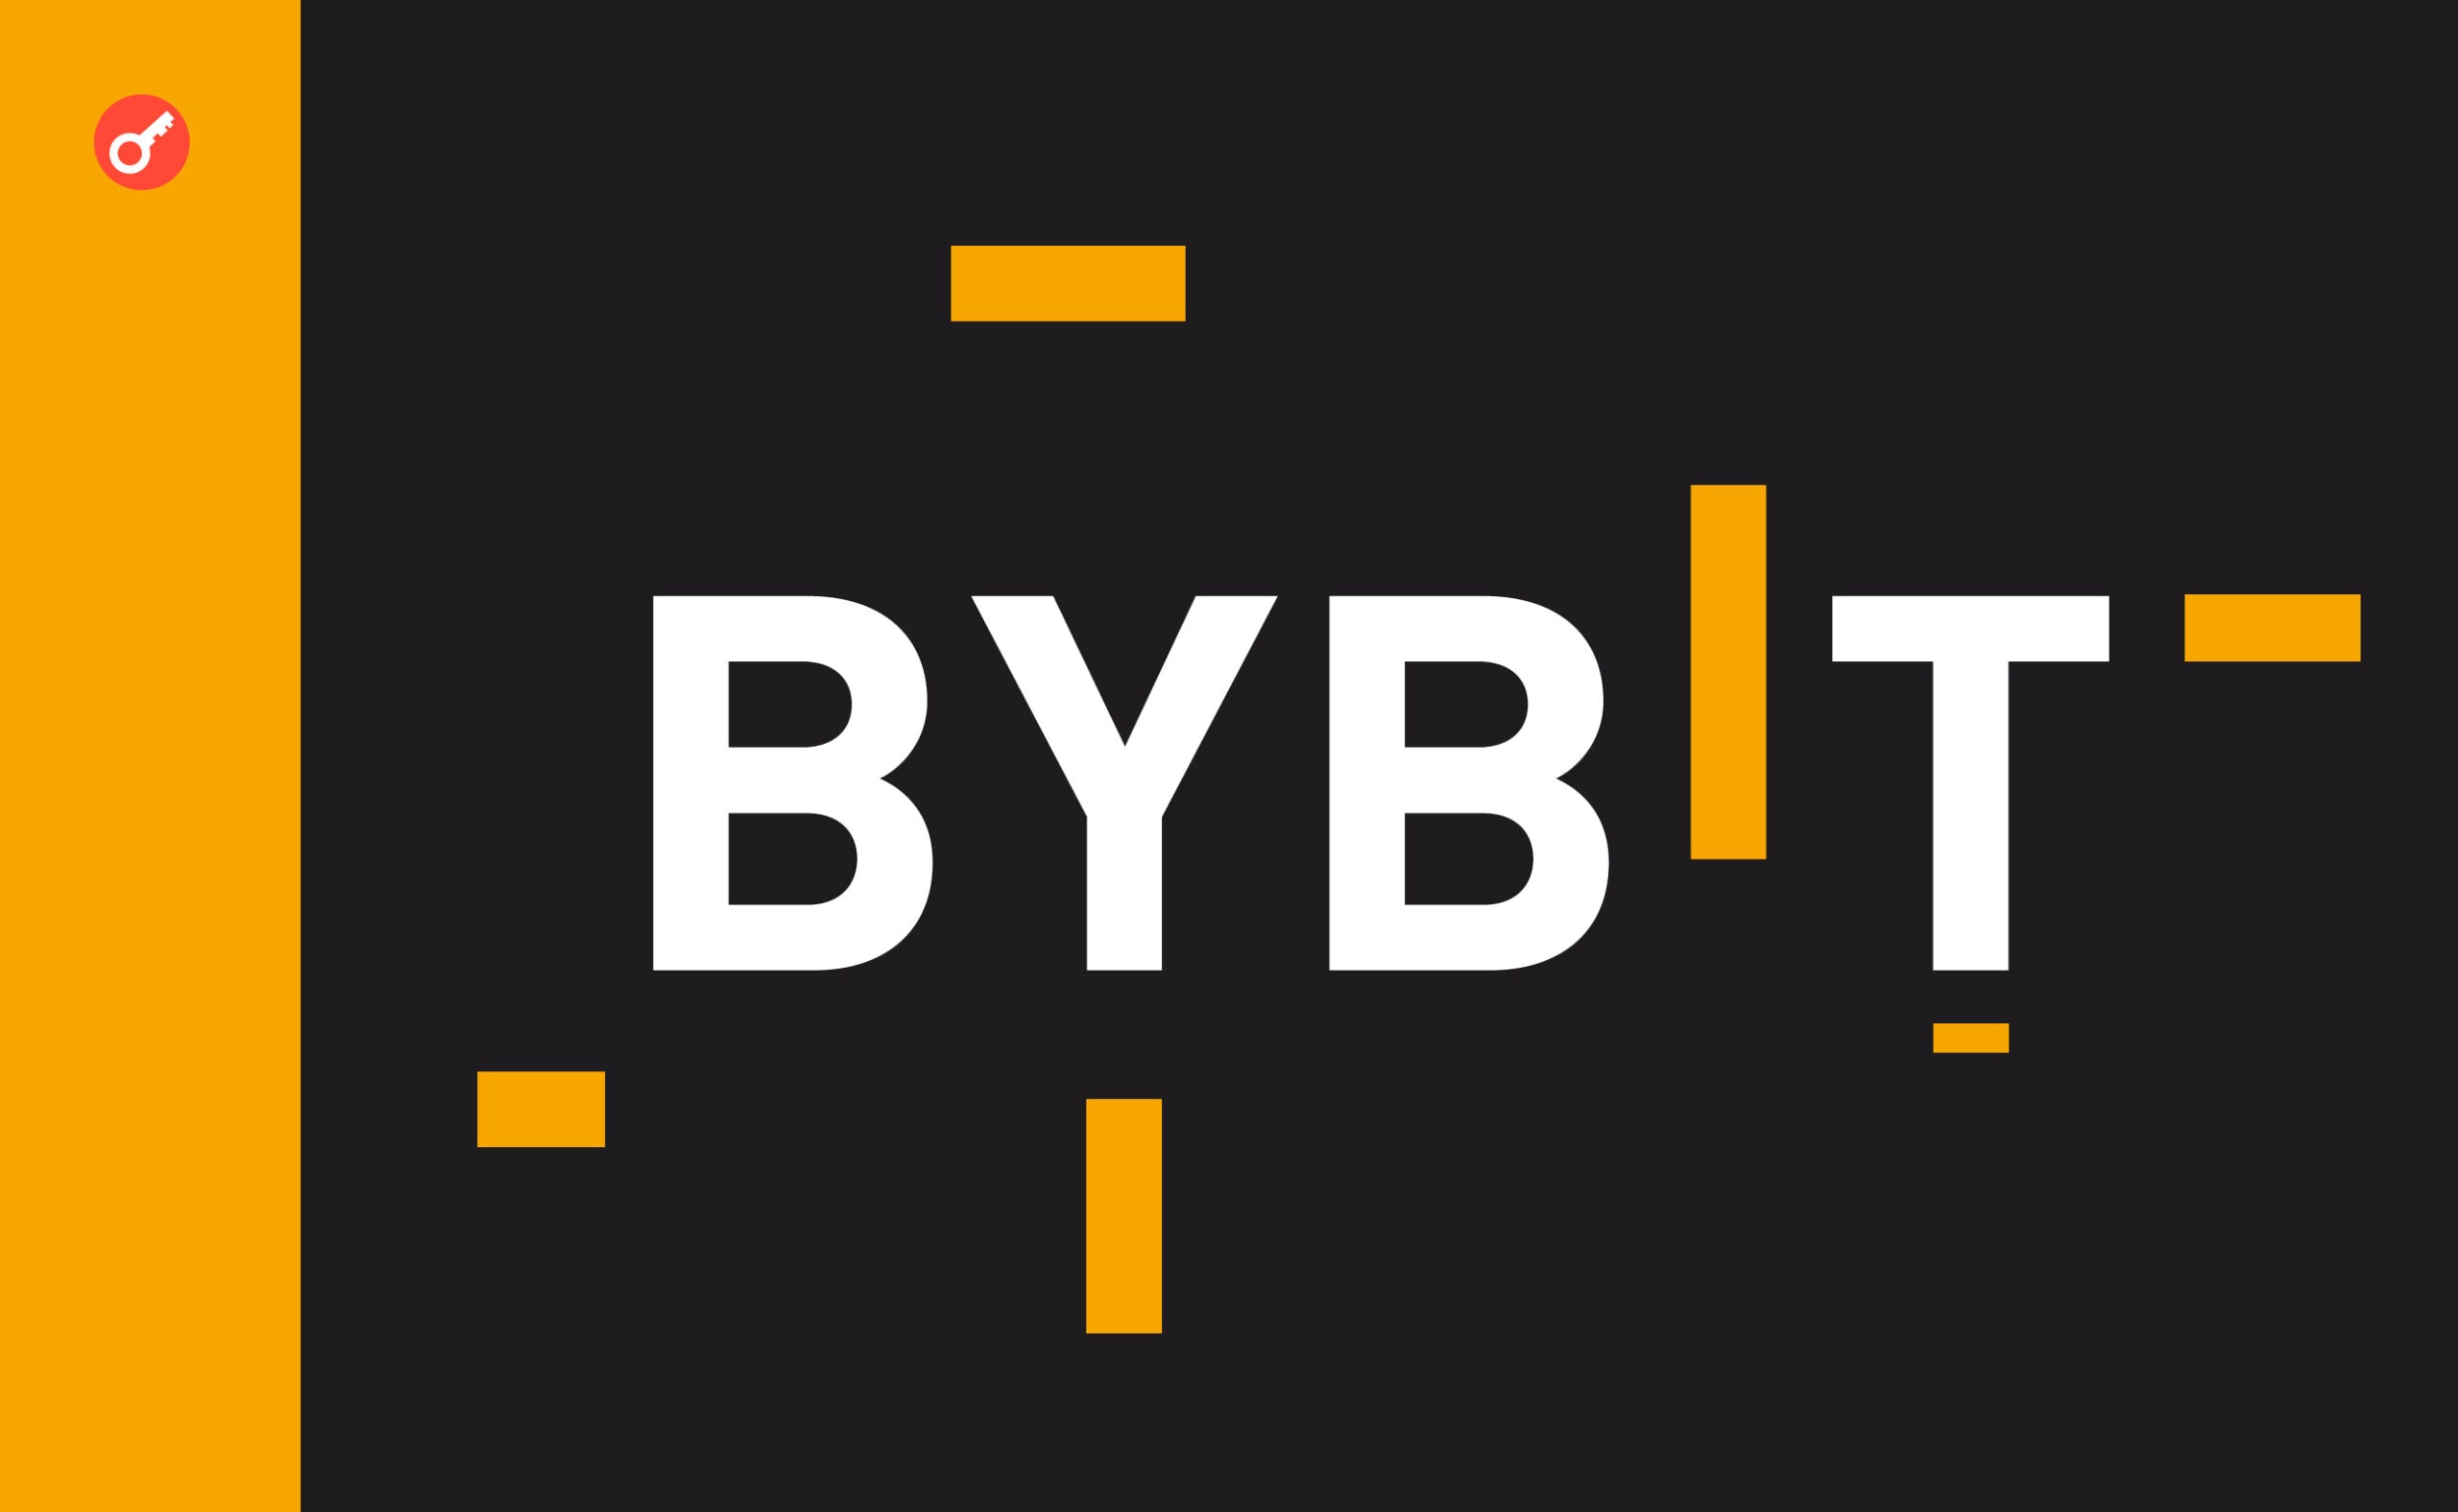 Bybit дисквалифицировала первую команду с турнира WSOT. Заглавный коллаж новости.